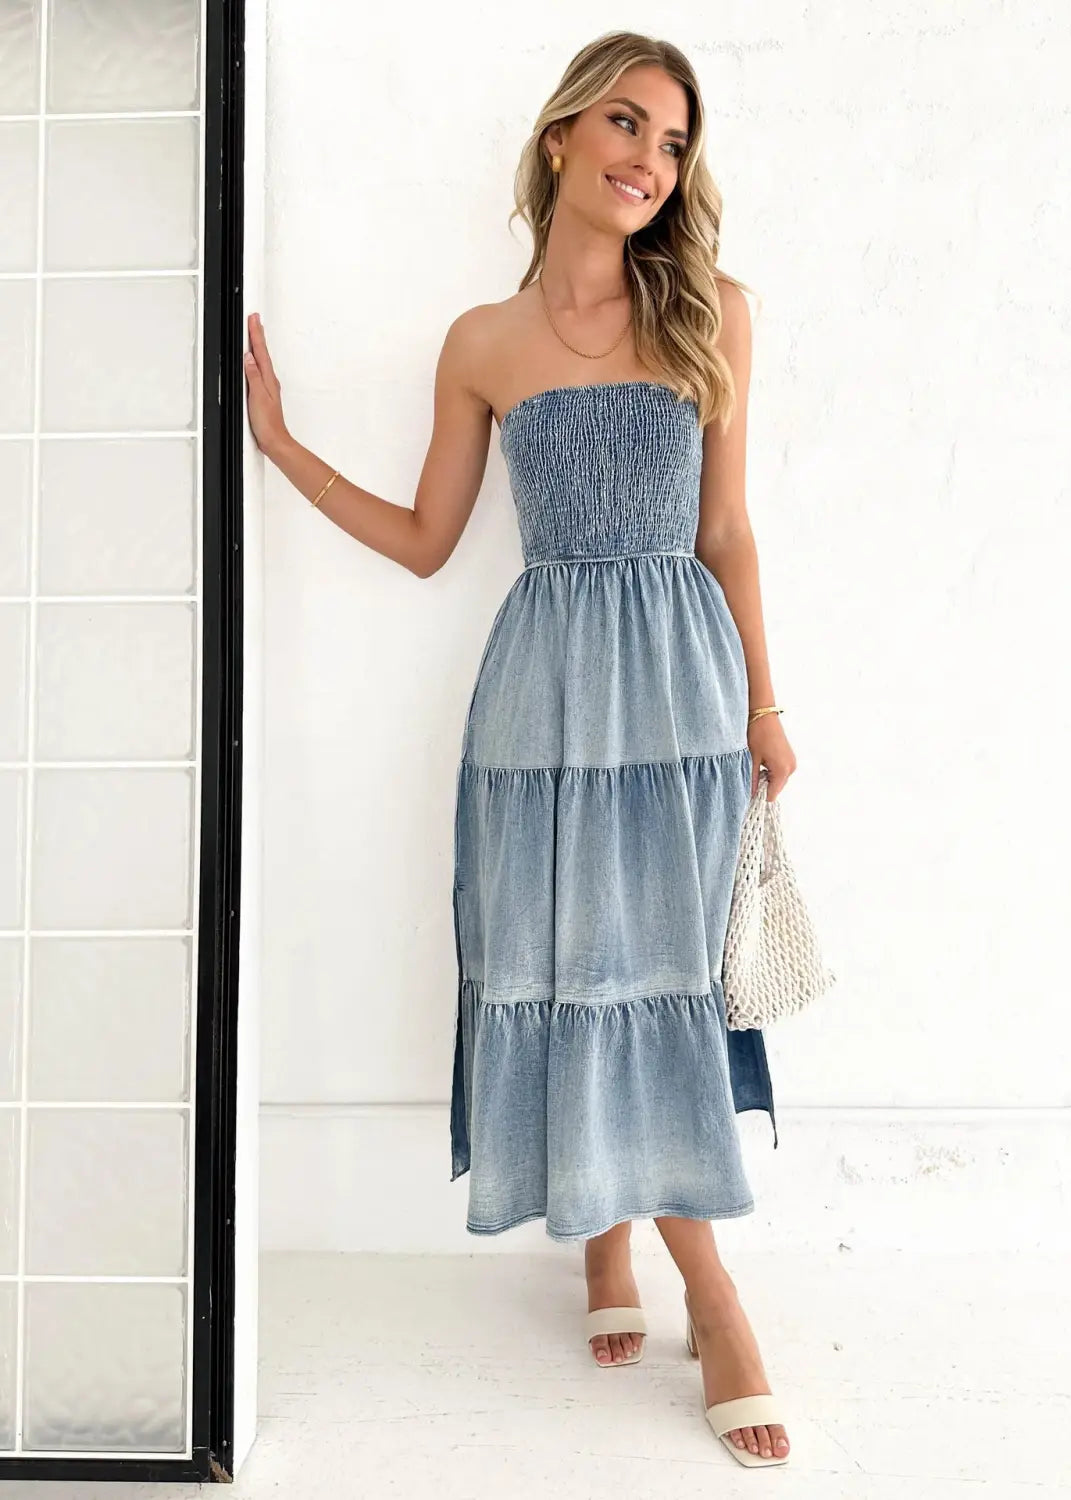 Elegant Strapless Denim Tiered Dress – Summer Chic